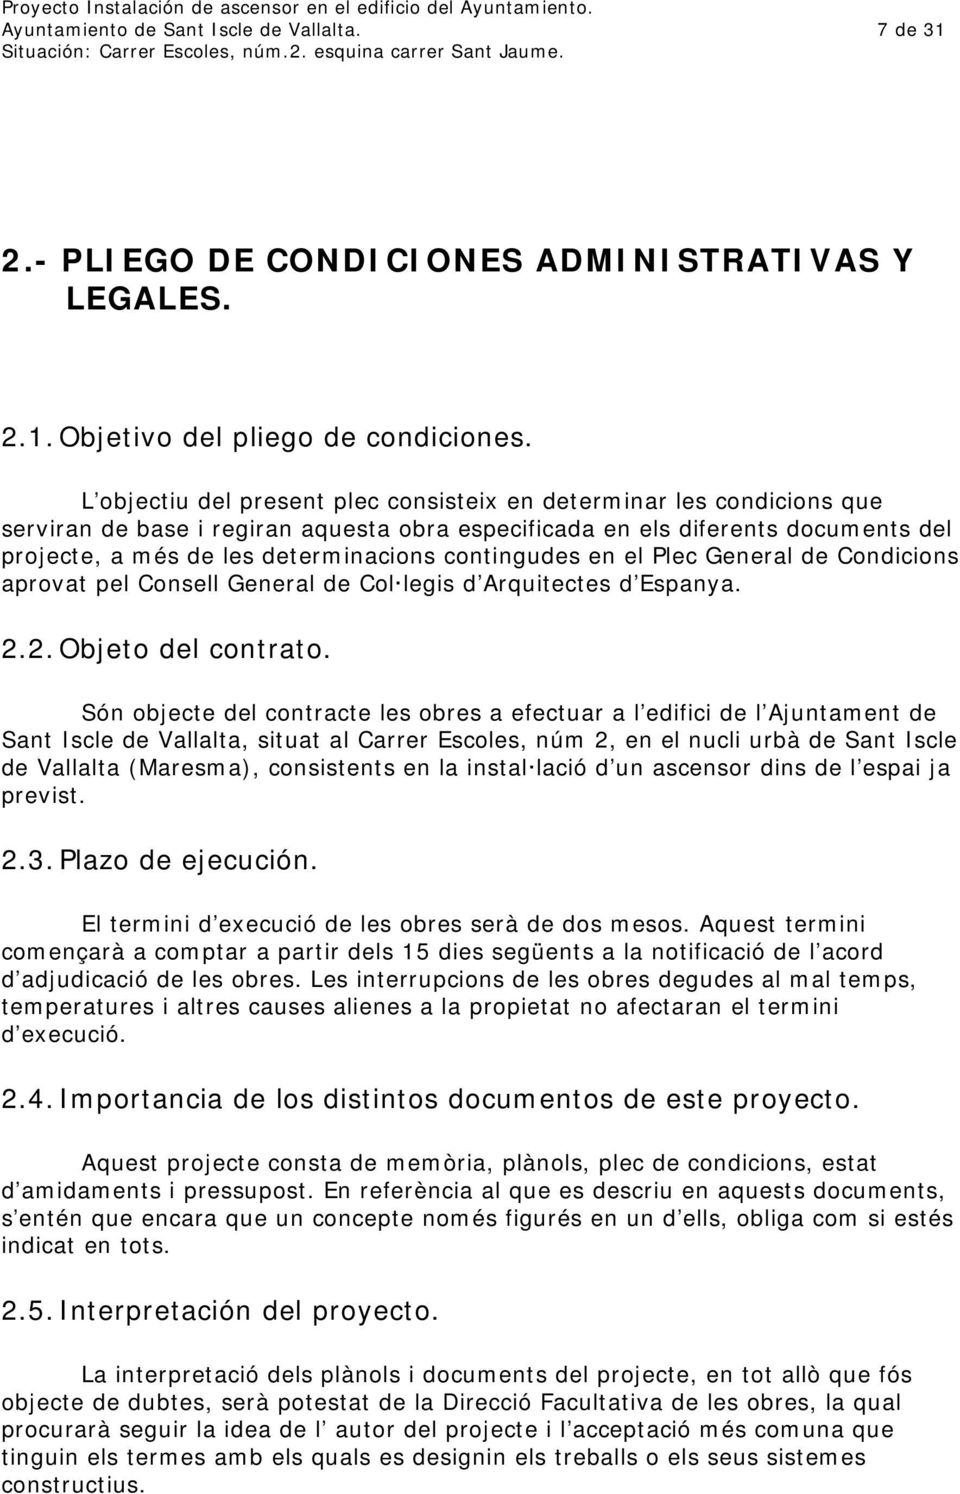 contingudes en el Plec General de Condicions aprovat pel Consell General de Col legis d Arquitectes d Espanya. 2.2. Objeto del contrato.